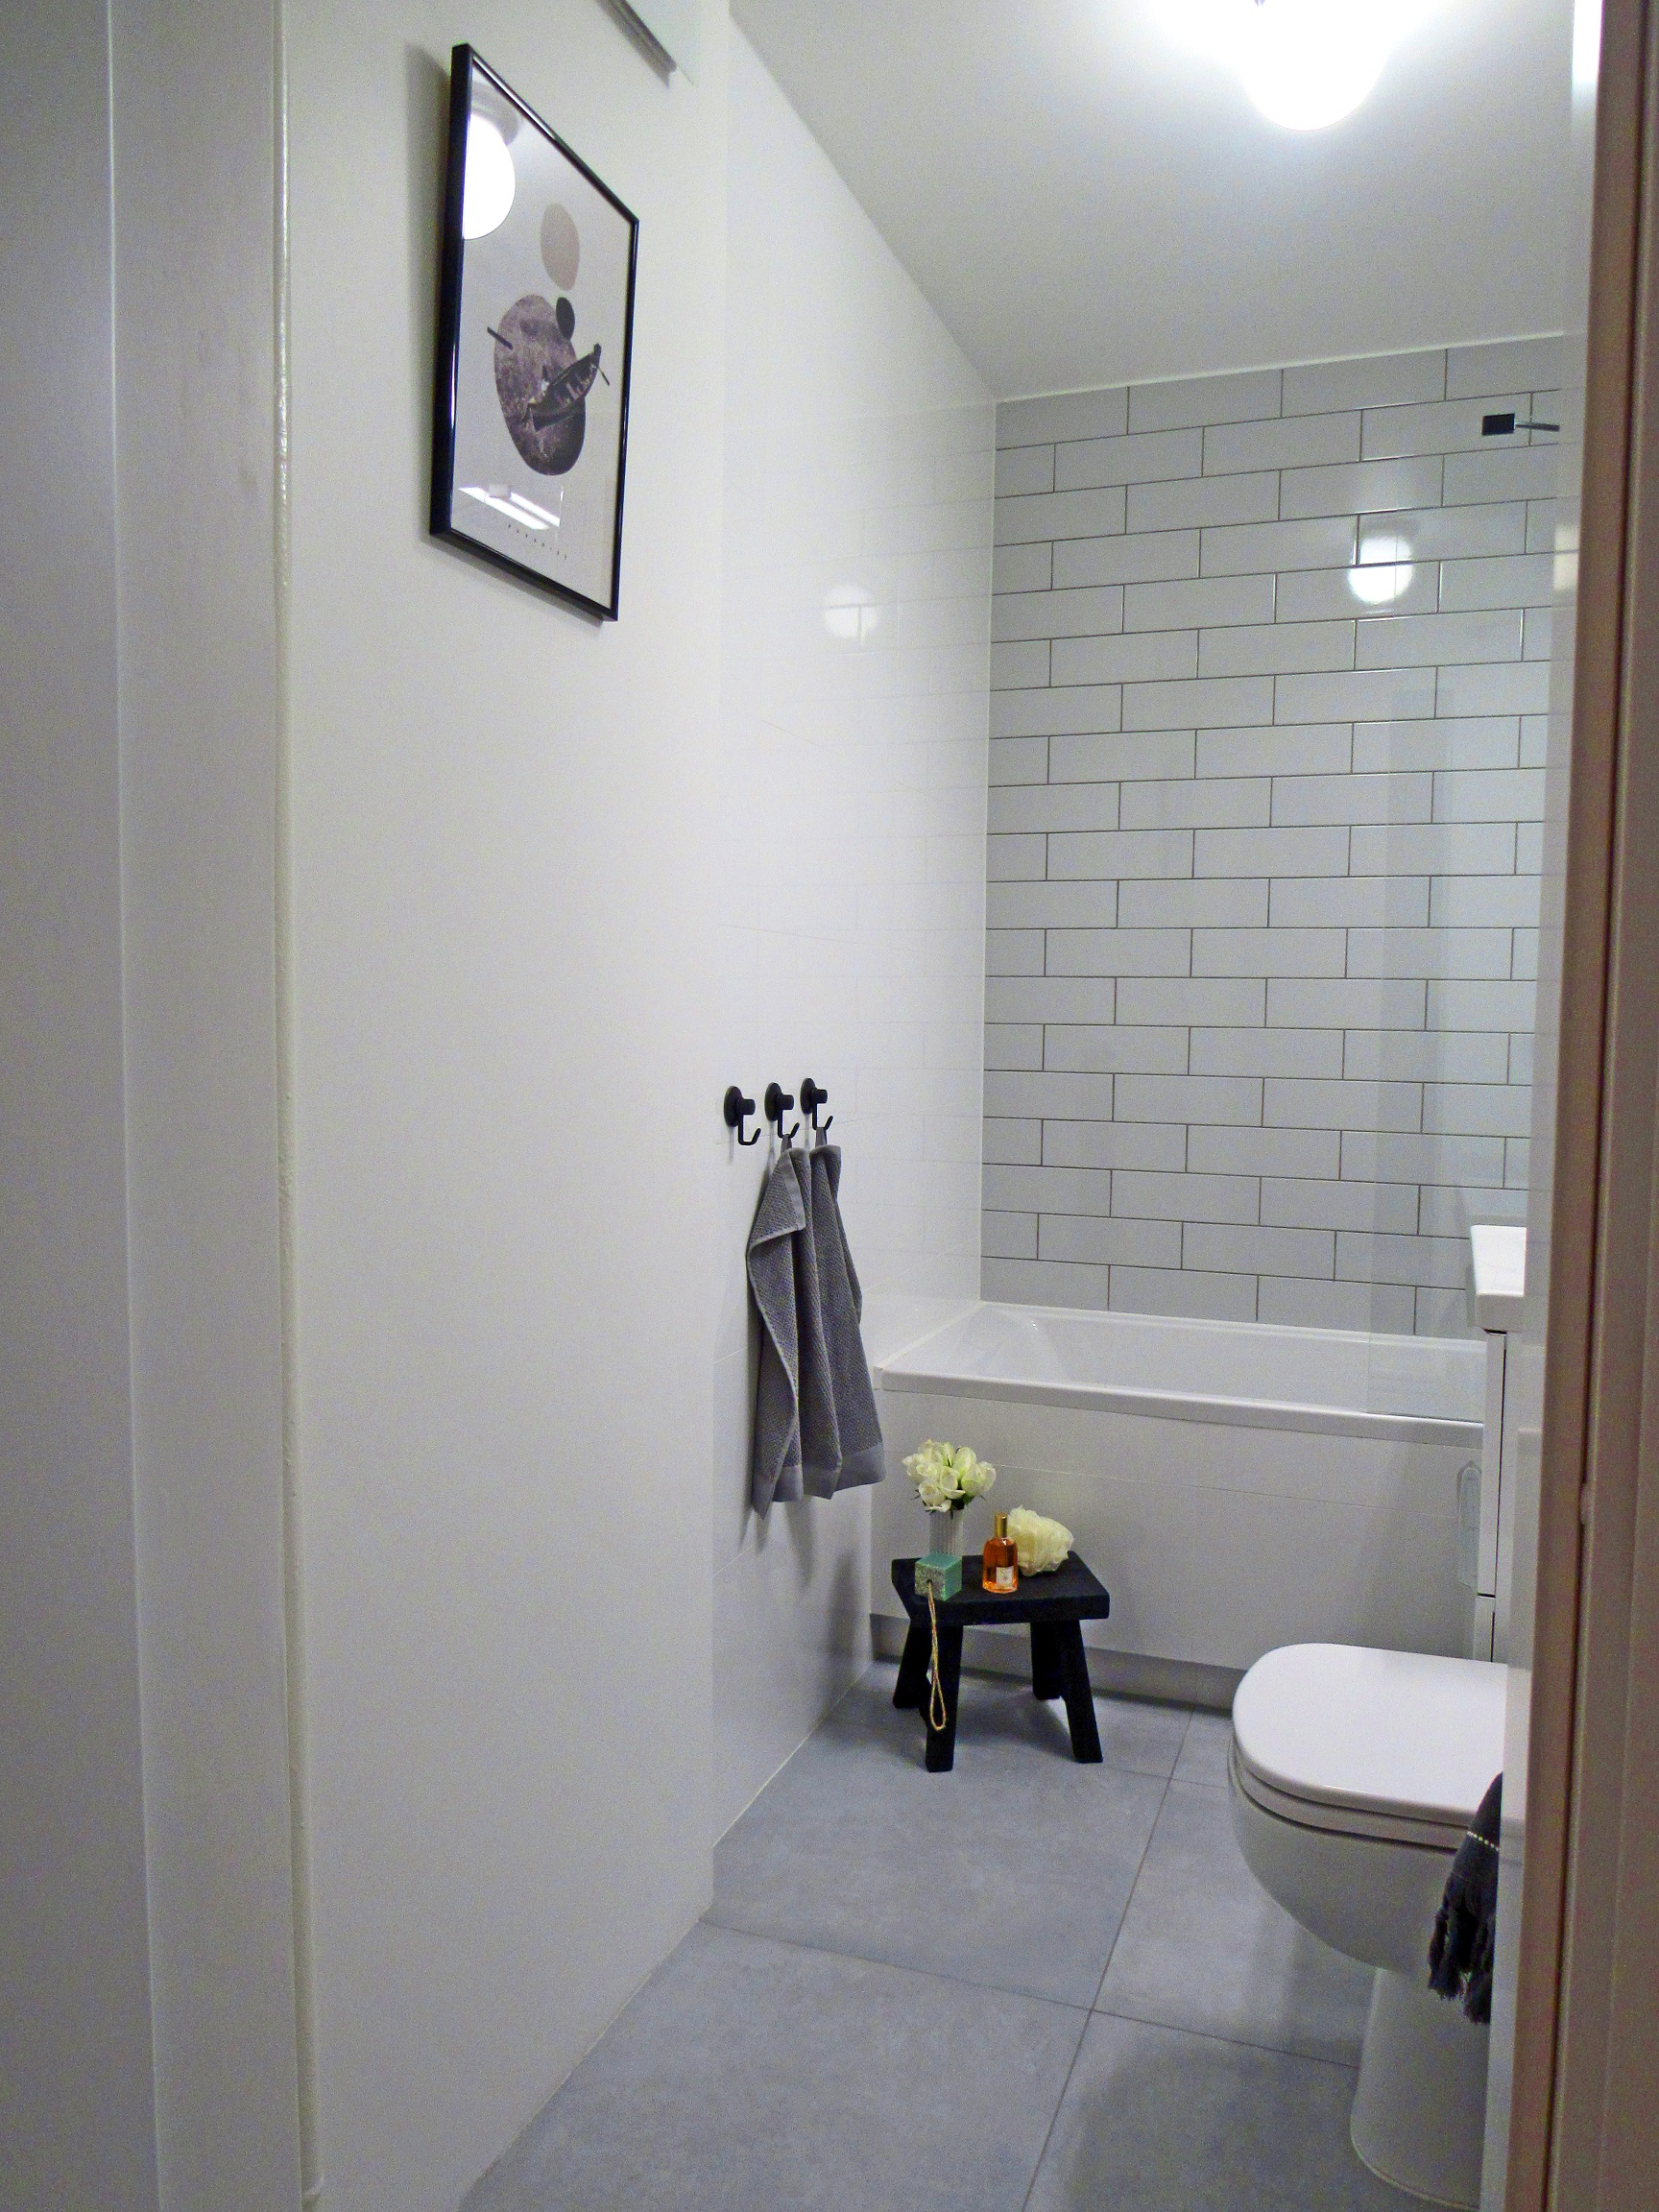 Metamorfoza małej łazienki w bloku - zdjęcia przed i po